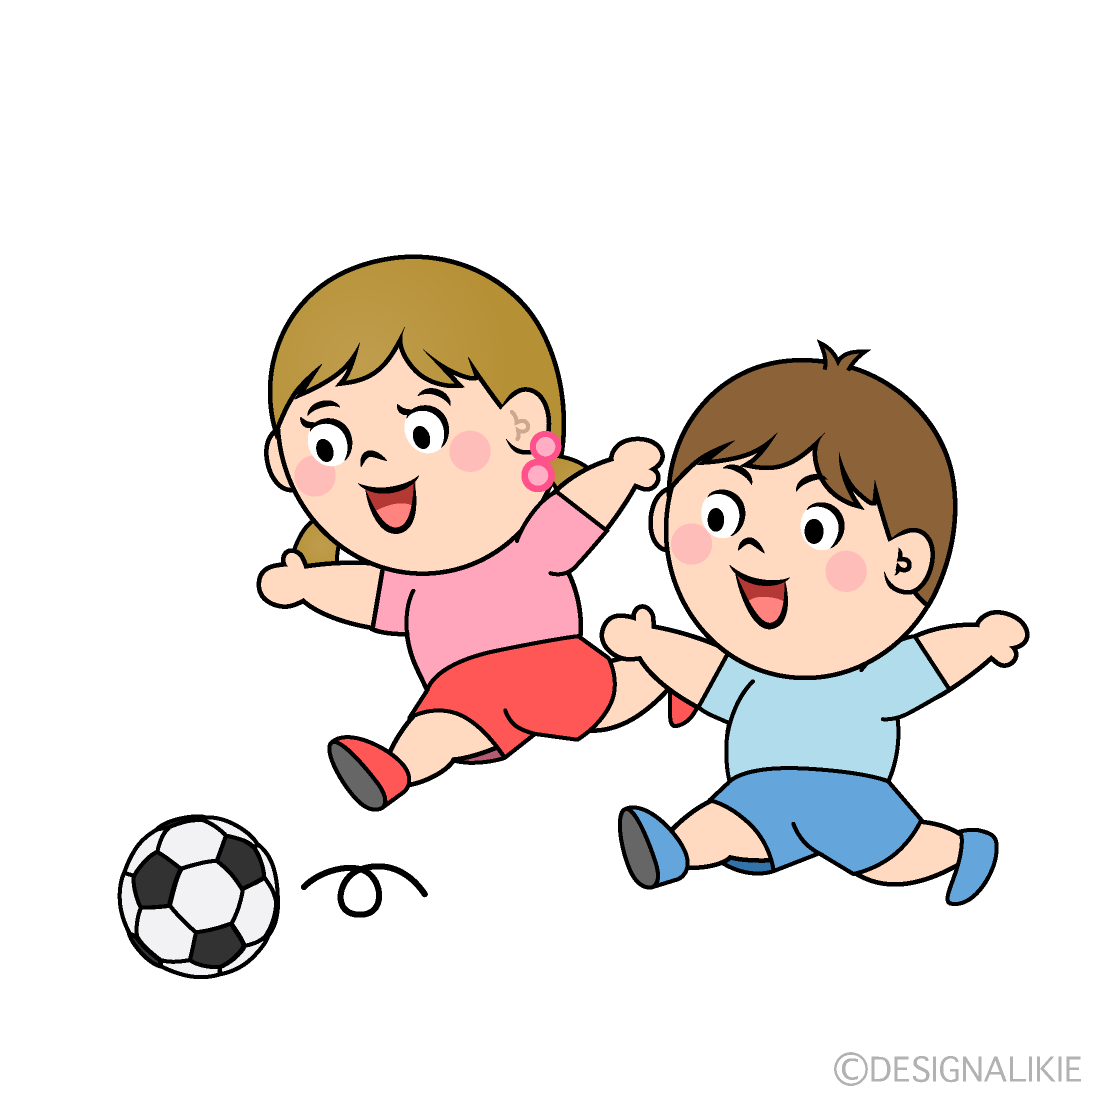 サッカーで走る子供の無料イラスト素材 イラストイメージ